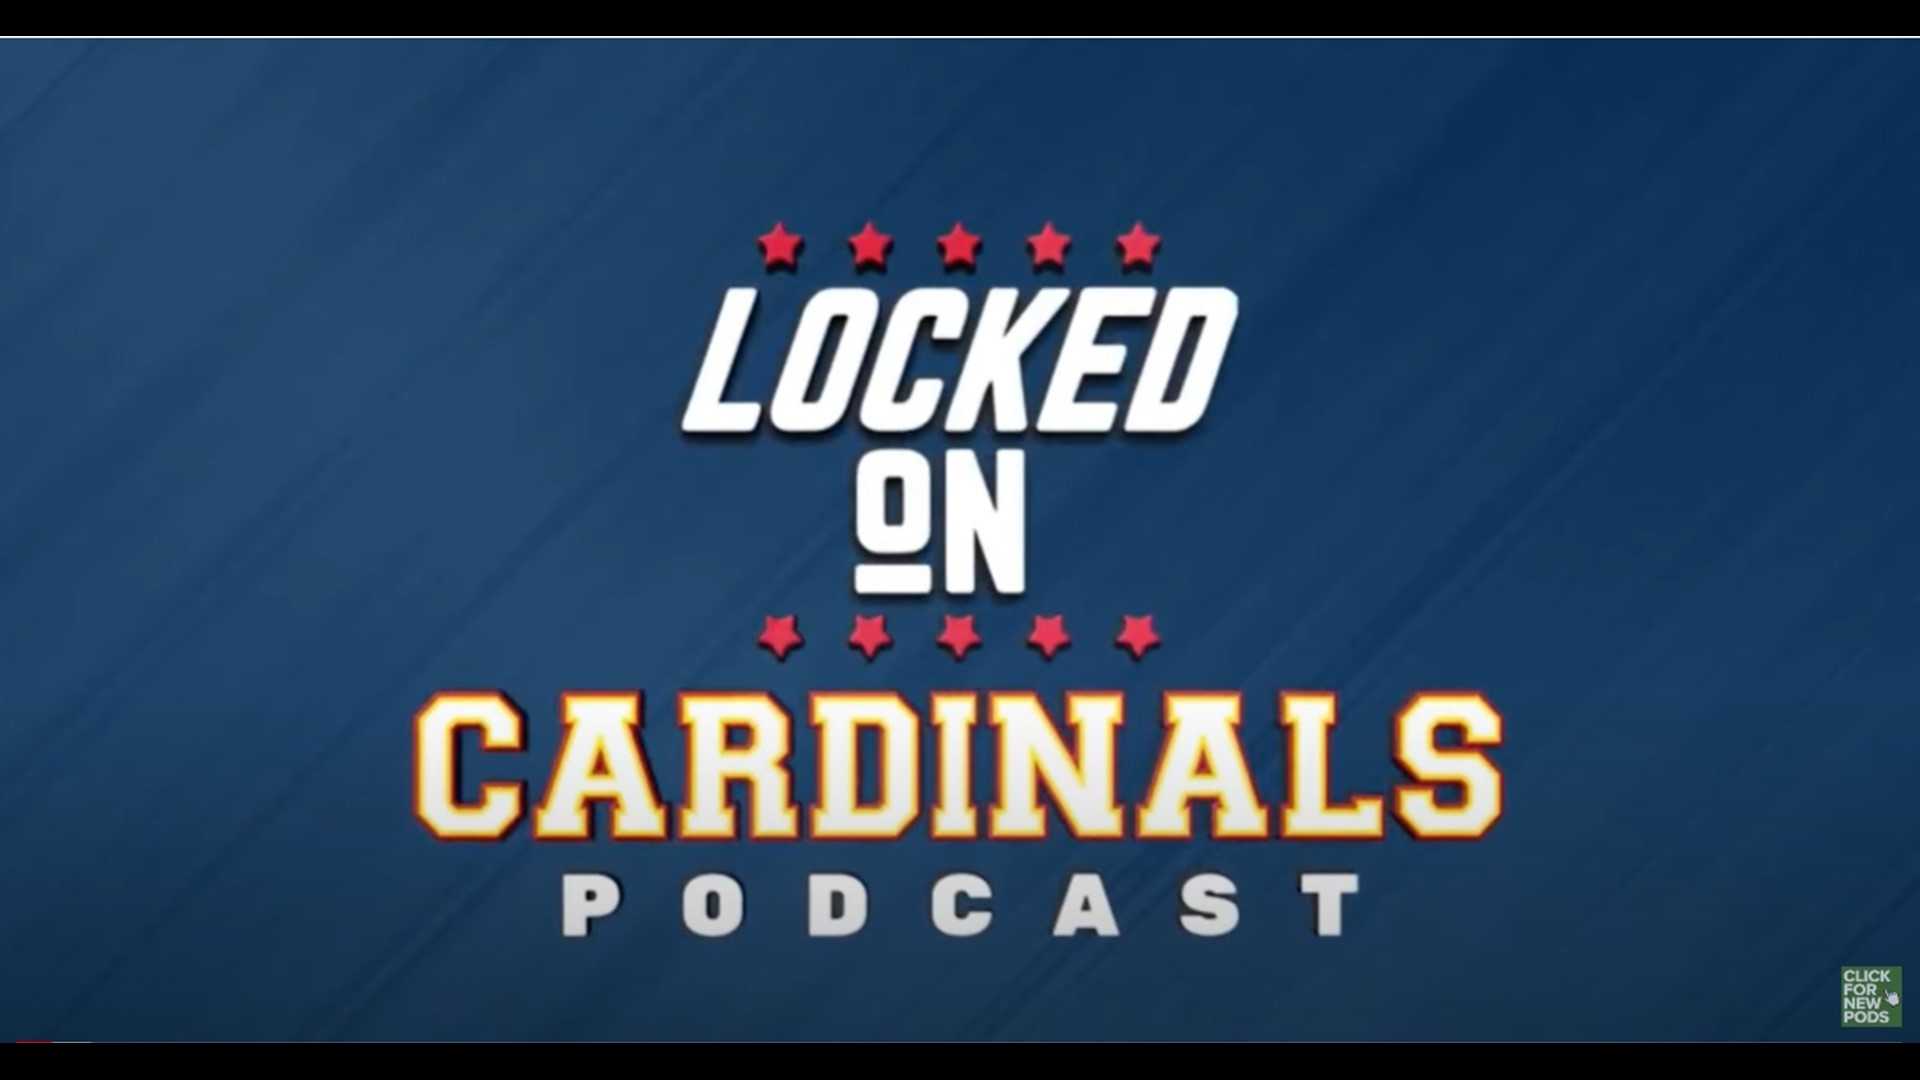 With Steven Matz injured, Cardinals must again address starting